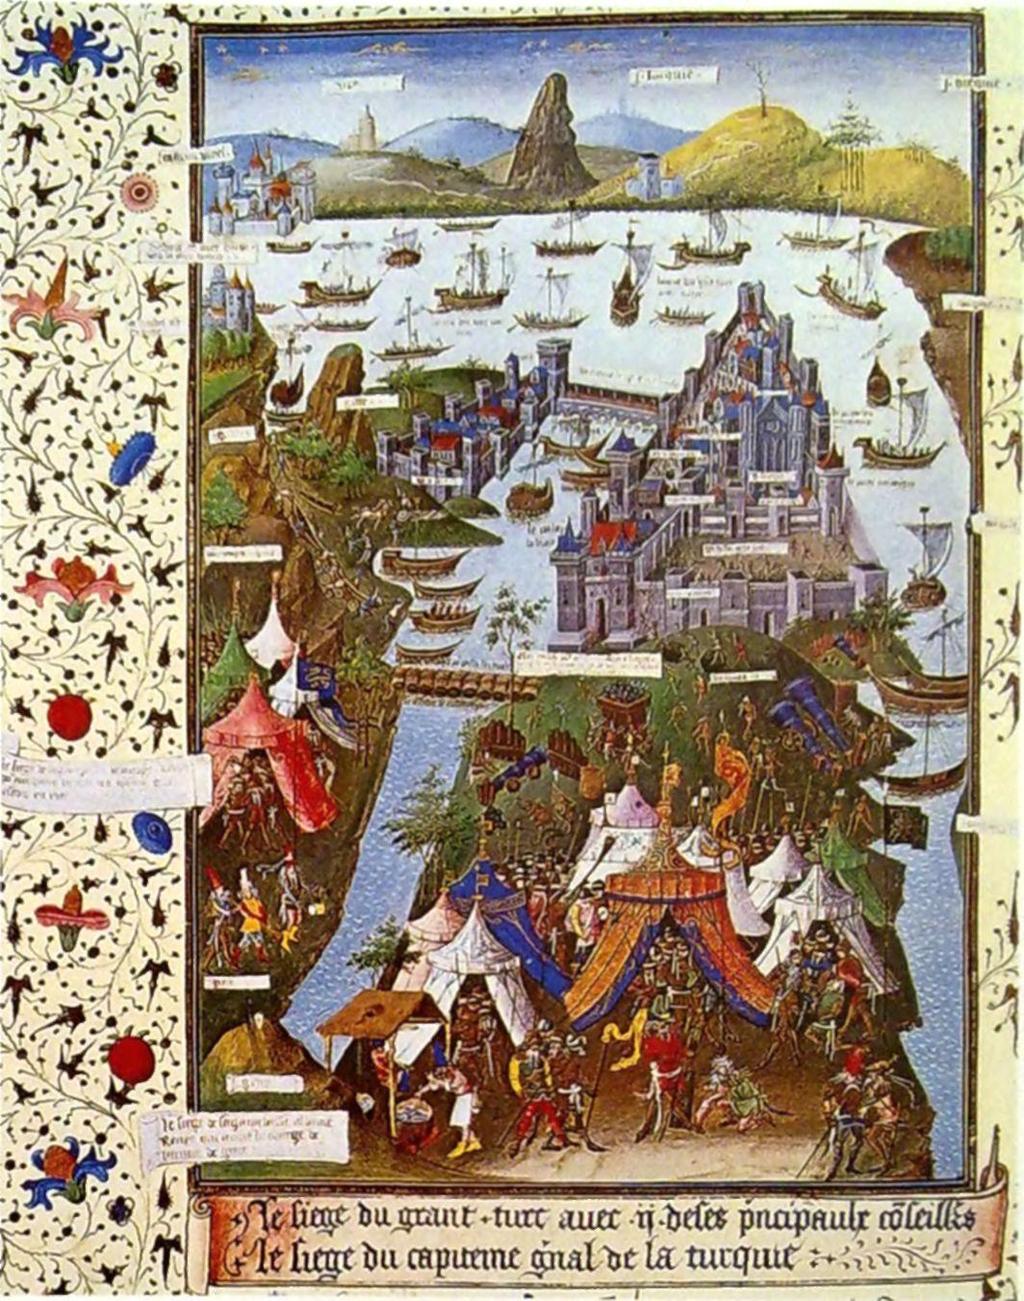 A másik fontos esemény az volt, hogy éppen a keresztes hadjárat kihirdetésével egy időben az Ulrich Eizinger vezette osztrák rendek elérték Cillei Ulrik eltávolítását László király udvarából.